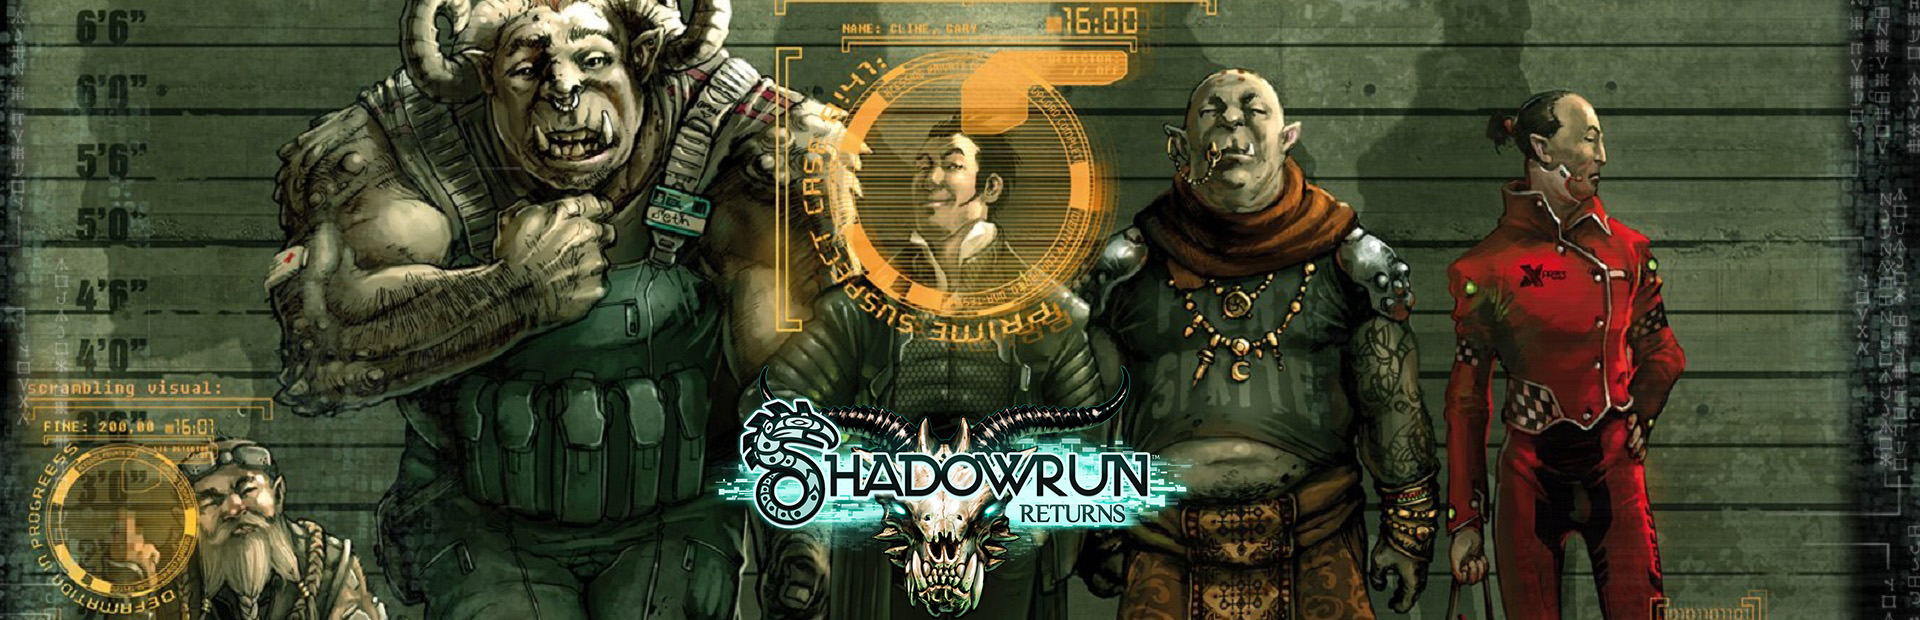 دانلود بازی Shadowrun Returns برای کامپیوتر | گیمباتو